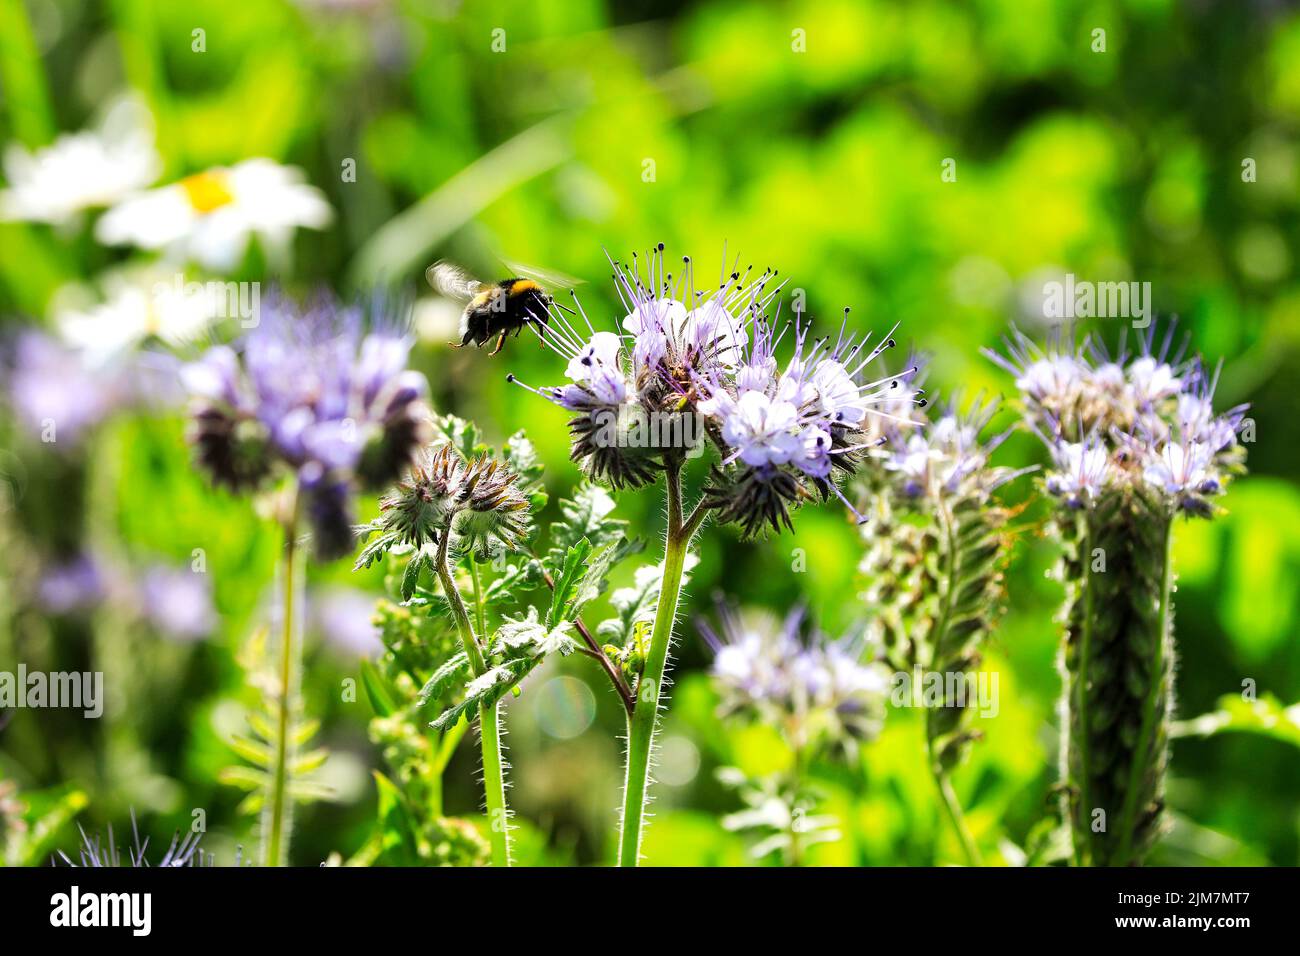 Bumblebee, insecte pollinisateur de Bombus spp, est sur le point d'atterrir sur la floraison Lacy phacelia, Phacelia tanacetifolia, pour se nourrir sur son nectar. À faible profondeur Banque D'Images